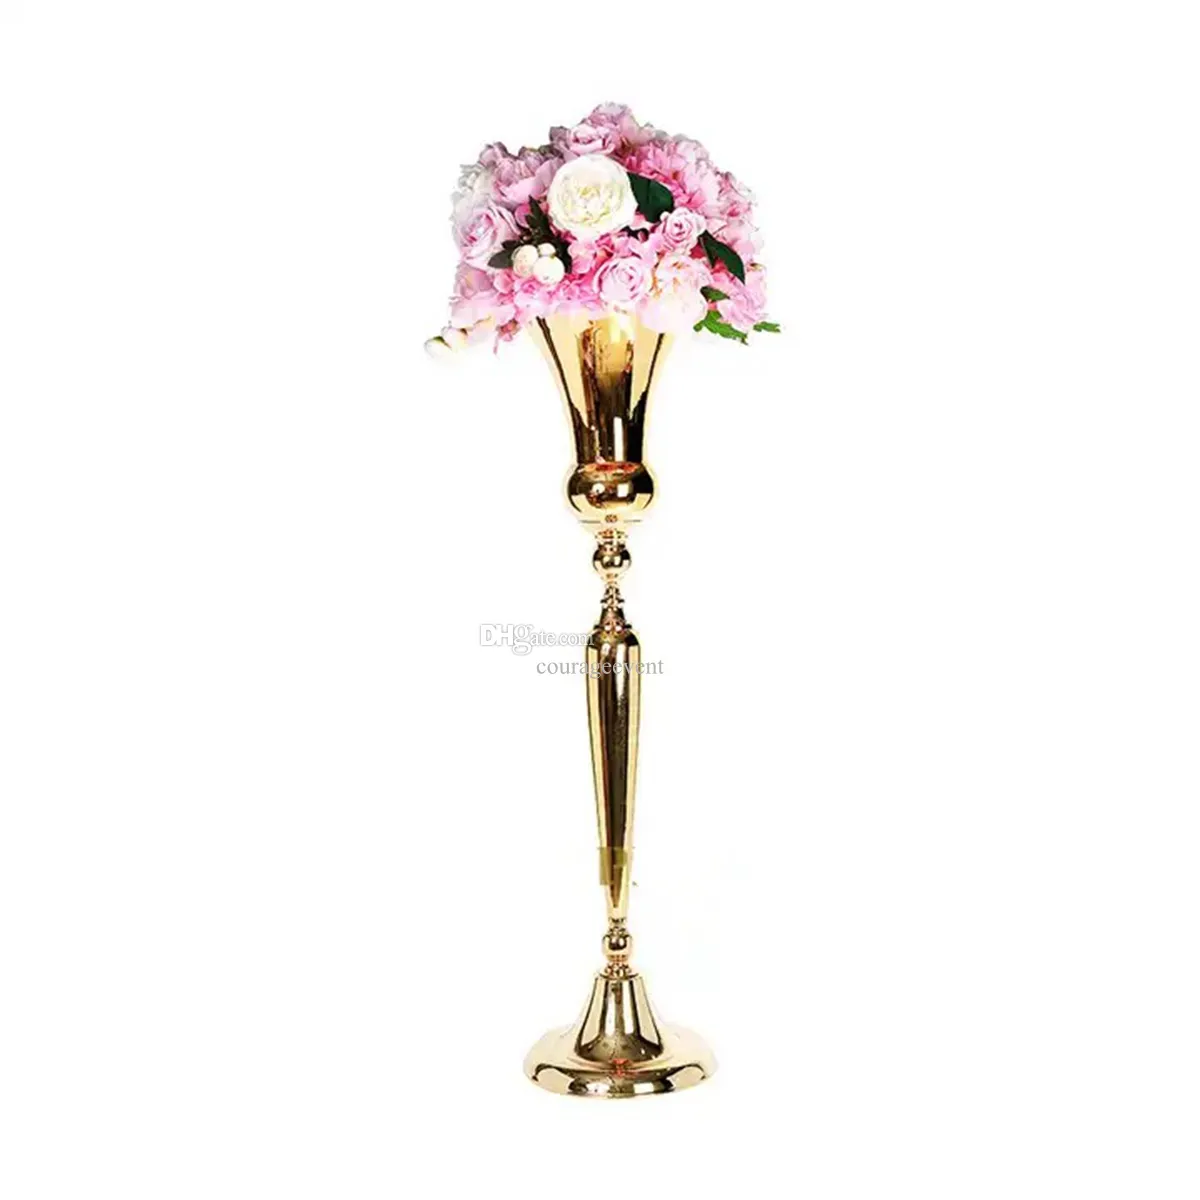 Da 80 cm a 120 cm di altezza) Vasi di fiori in metallo dorato Centrotavola Centrotavola Tromba Disegni di supporti floreali per matrimoni Eventi natalizi Decorazioni per feste